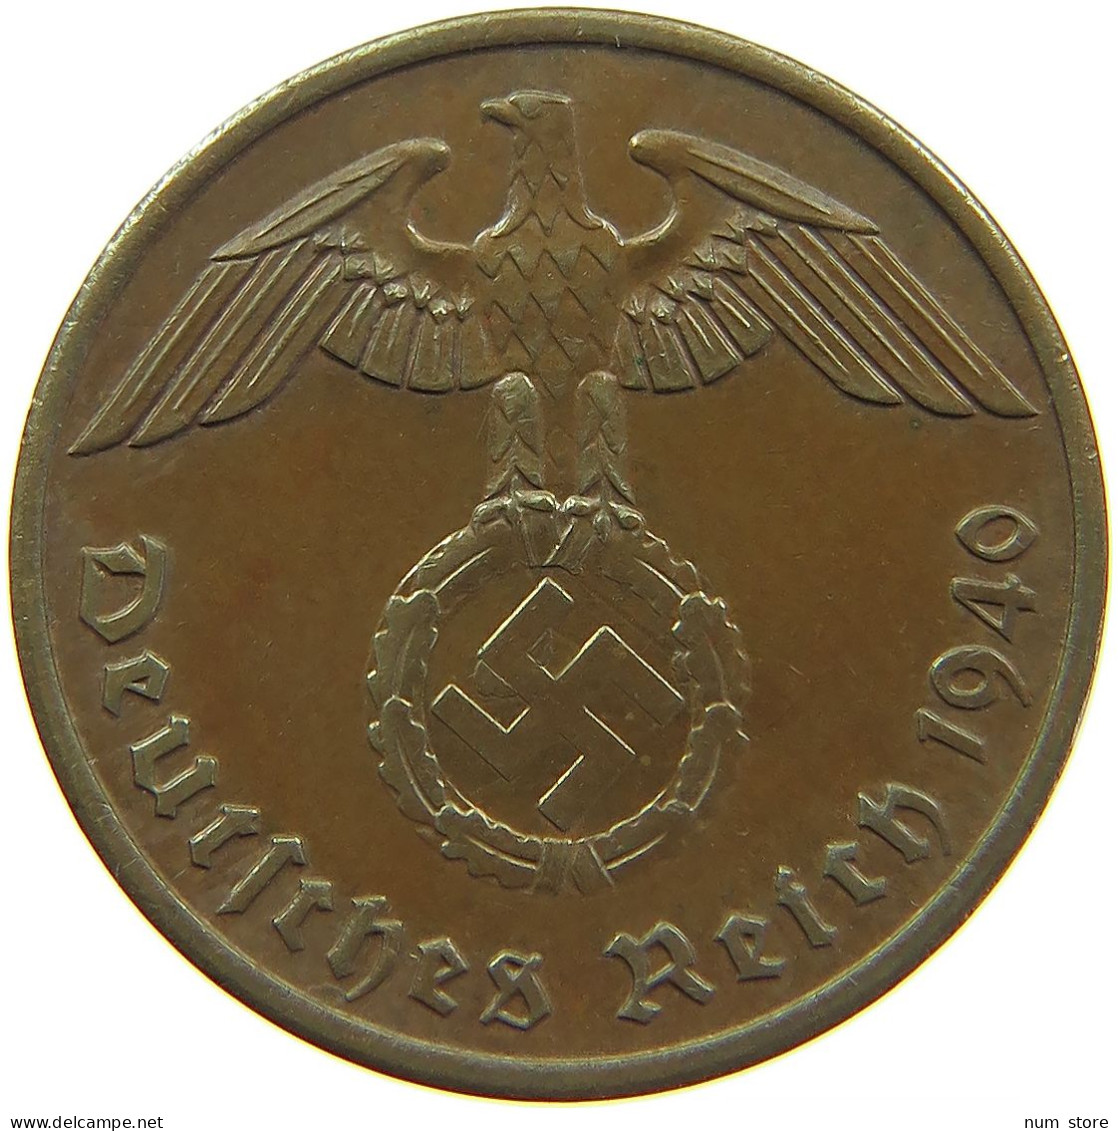 GERMANY 2 REICHSPFENNIG 1940 A #s095 0177 - 2 Reichspfennig